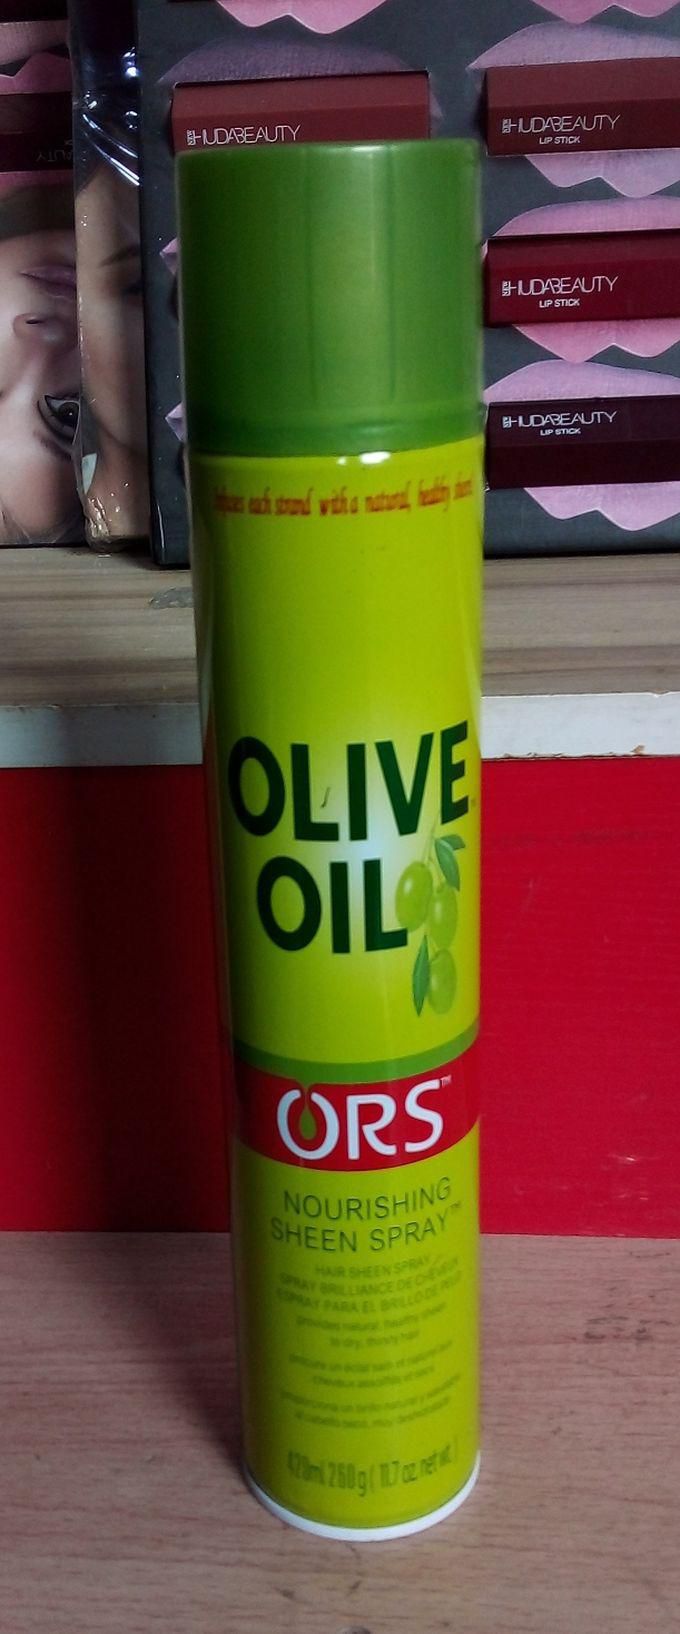 Ors OLIVE OIL NOURISHING HAIR SHEEN SPRAY 420ml